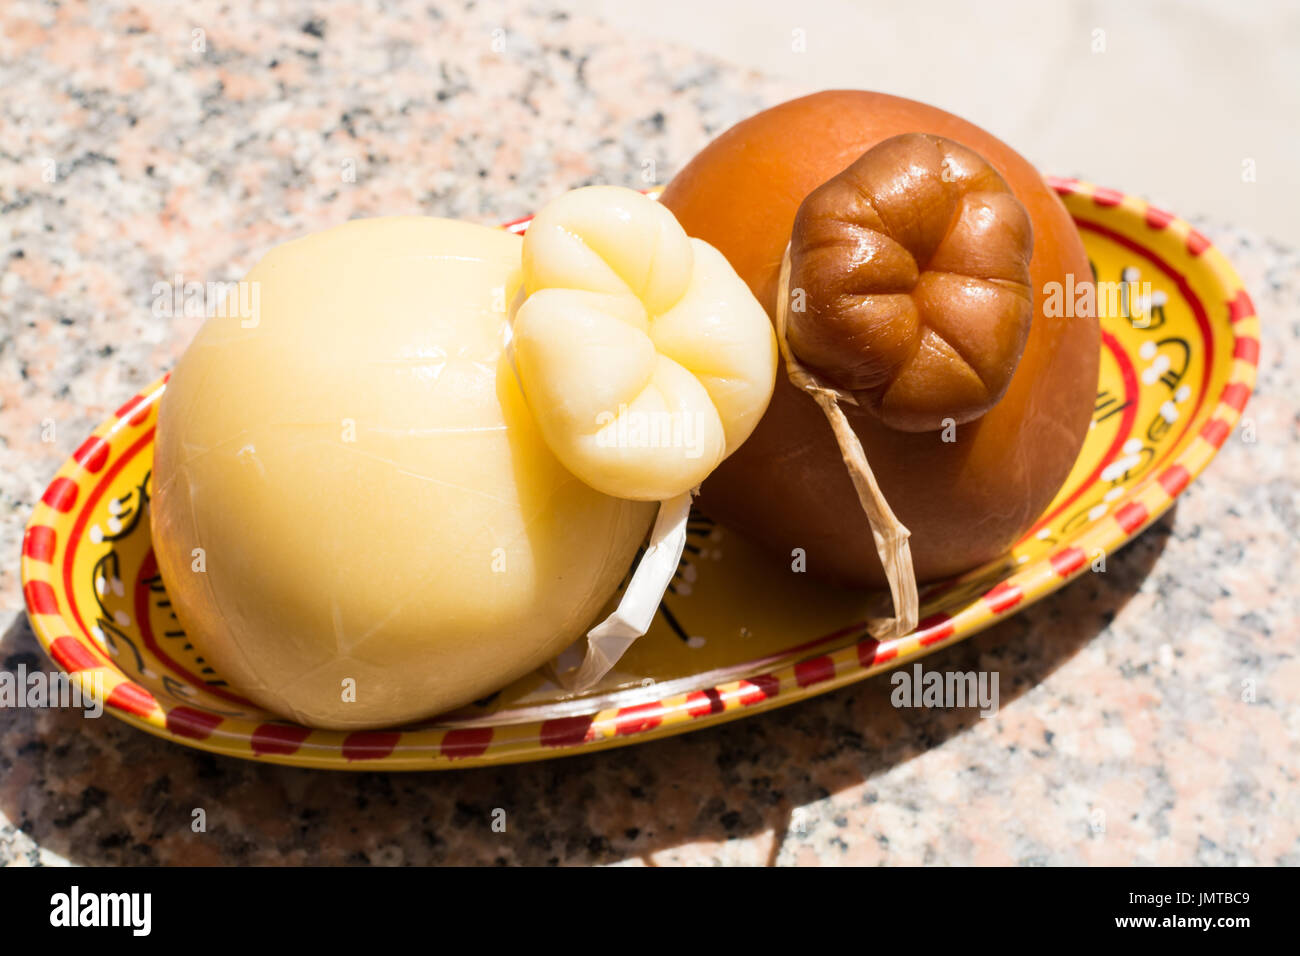 Tradizionale formaggio duro italiano Provolone Caciocavallo, bianco e affumicato, pronto a mangiare Foto Stock